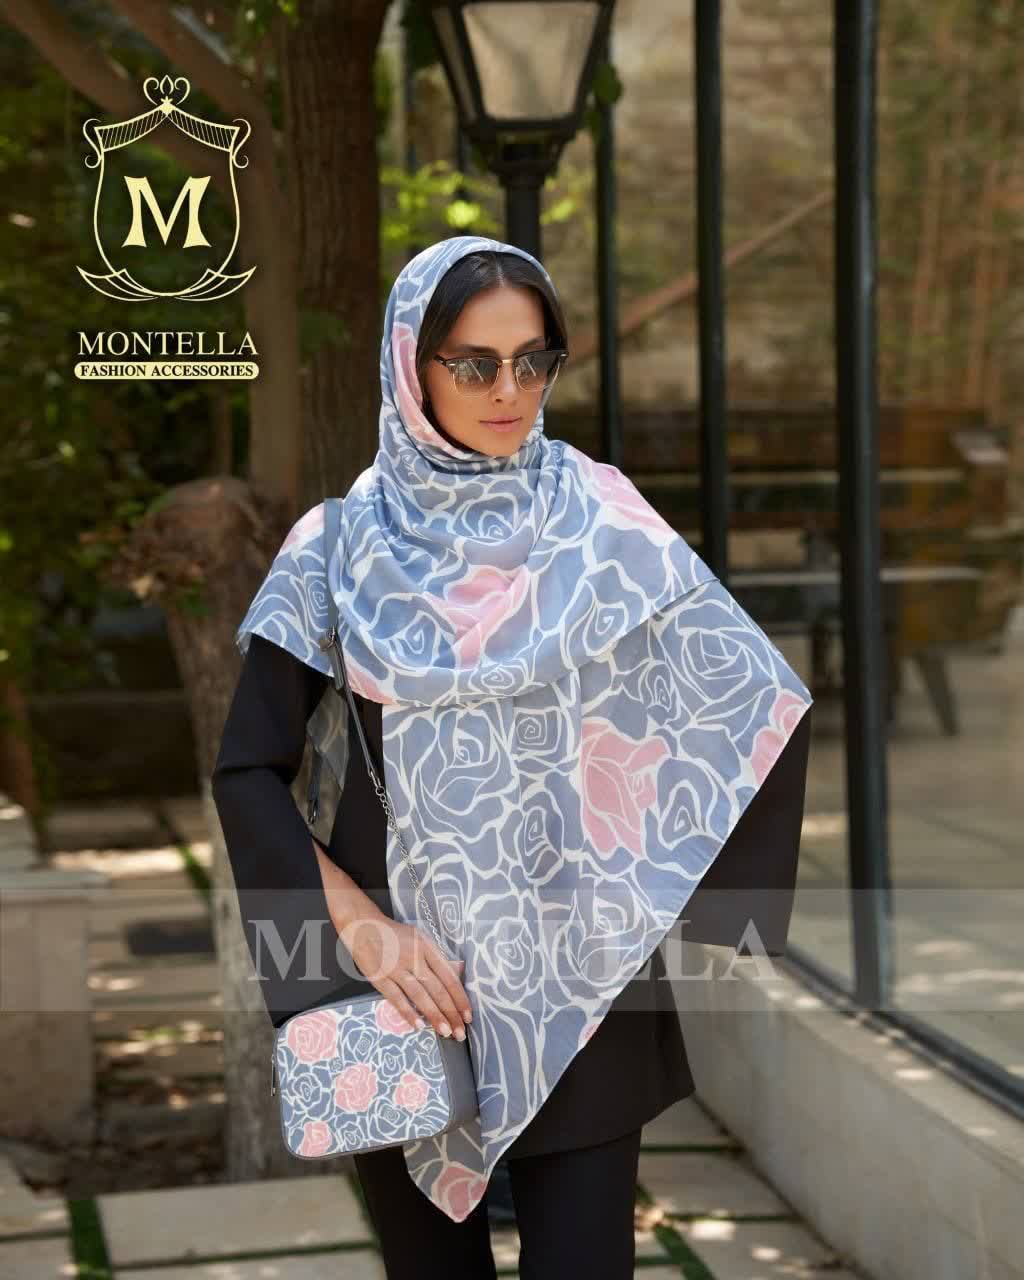 ست کیف و روسری زنانه طرح رز طوسی گل صورتی با کیف کوچک کیفیت عالی با ارسال رایگان کد mo577